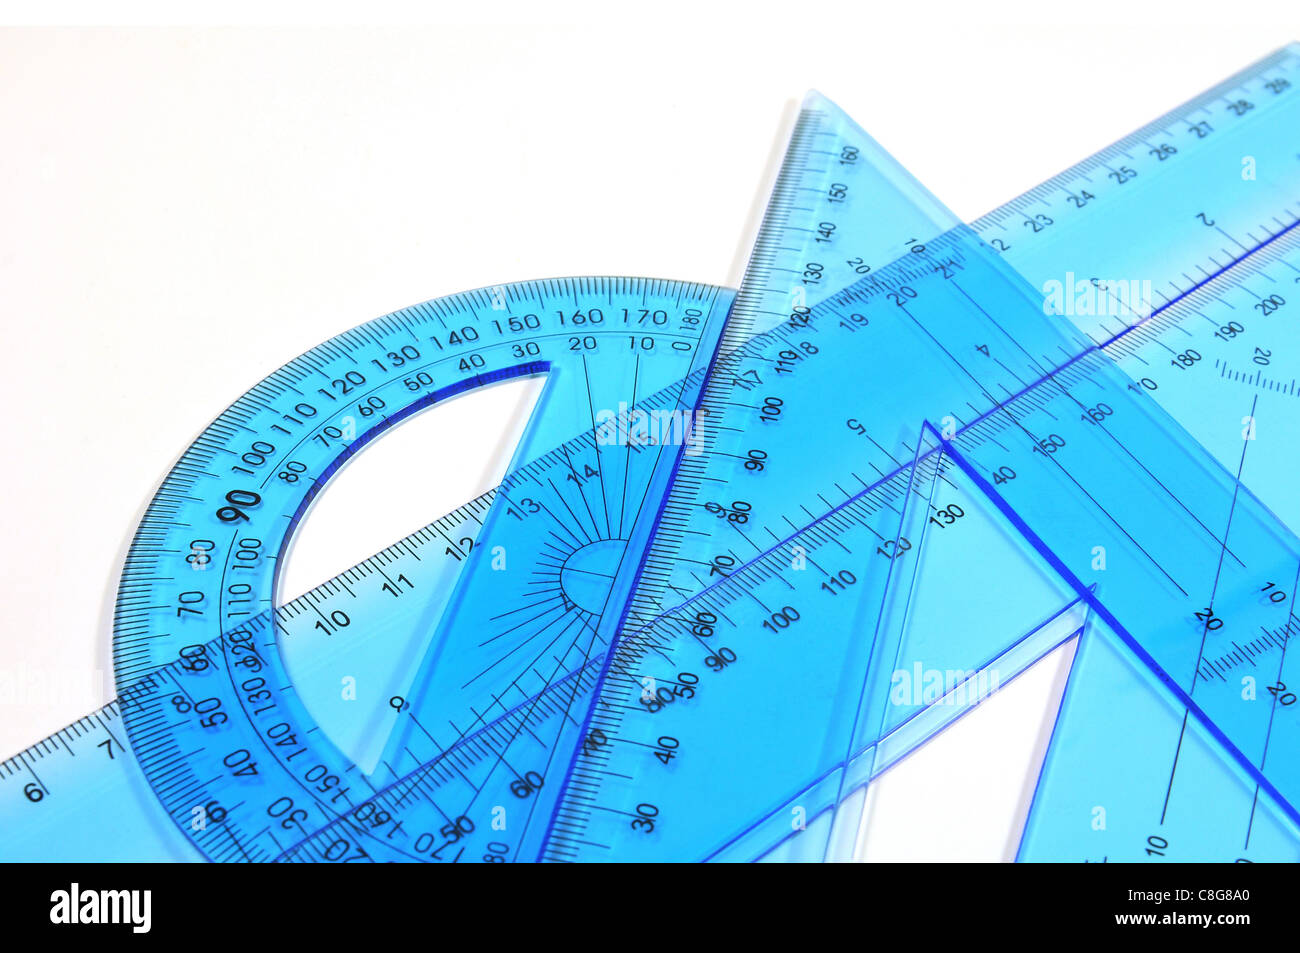 Architektur-Tools - Set Lineal, Dreieck und Winkelmesser auf weißem Hintergrund Stockfoto